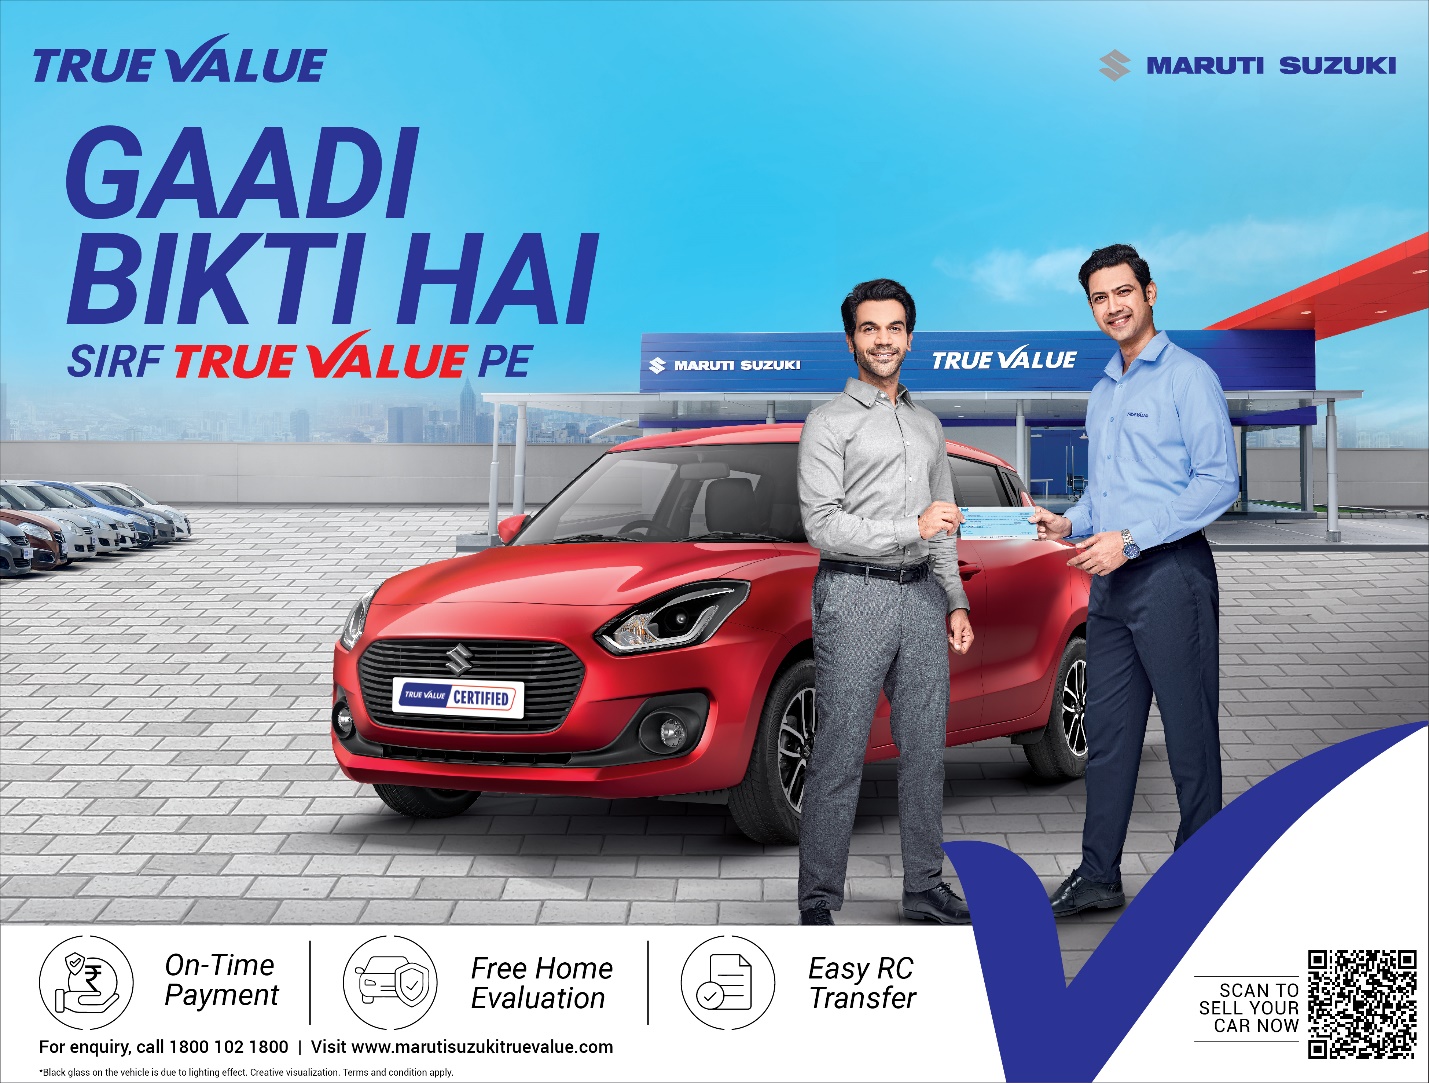 Maruti Suzuki True Value launches new brand campaign #SirfTrueValuePe